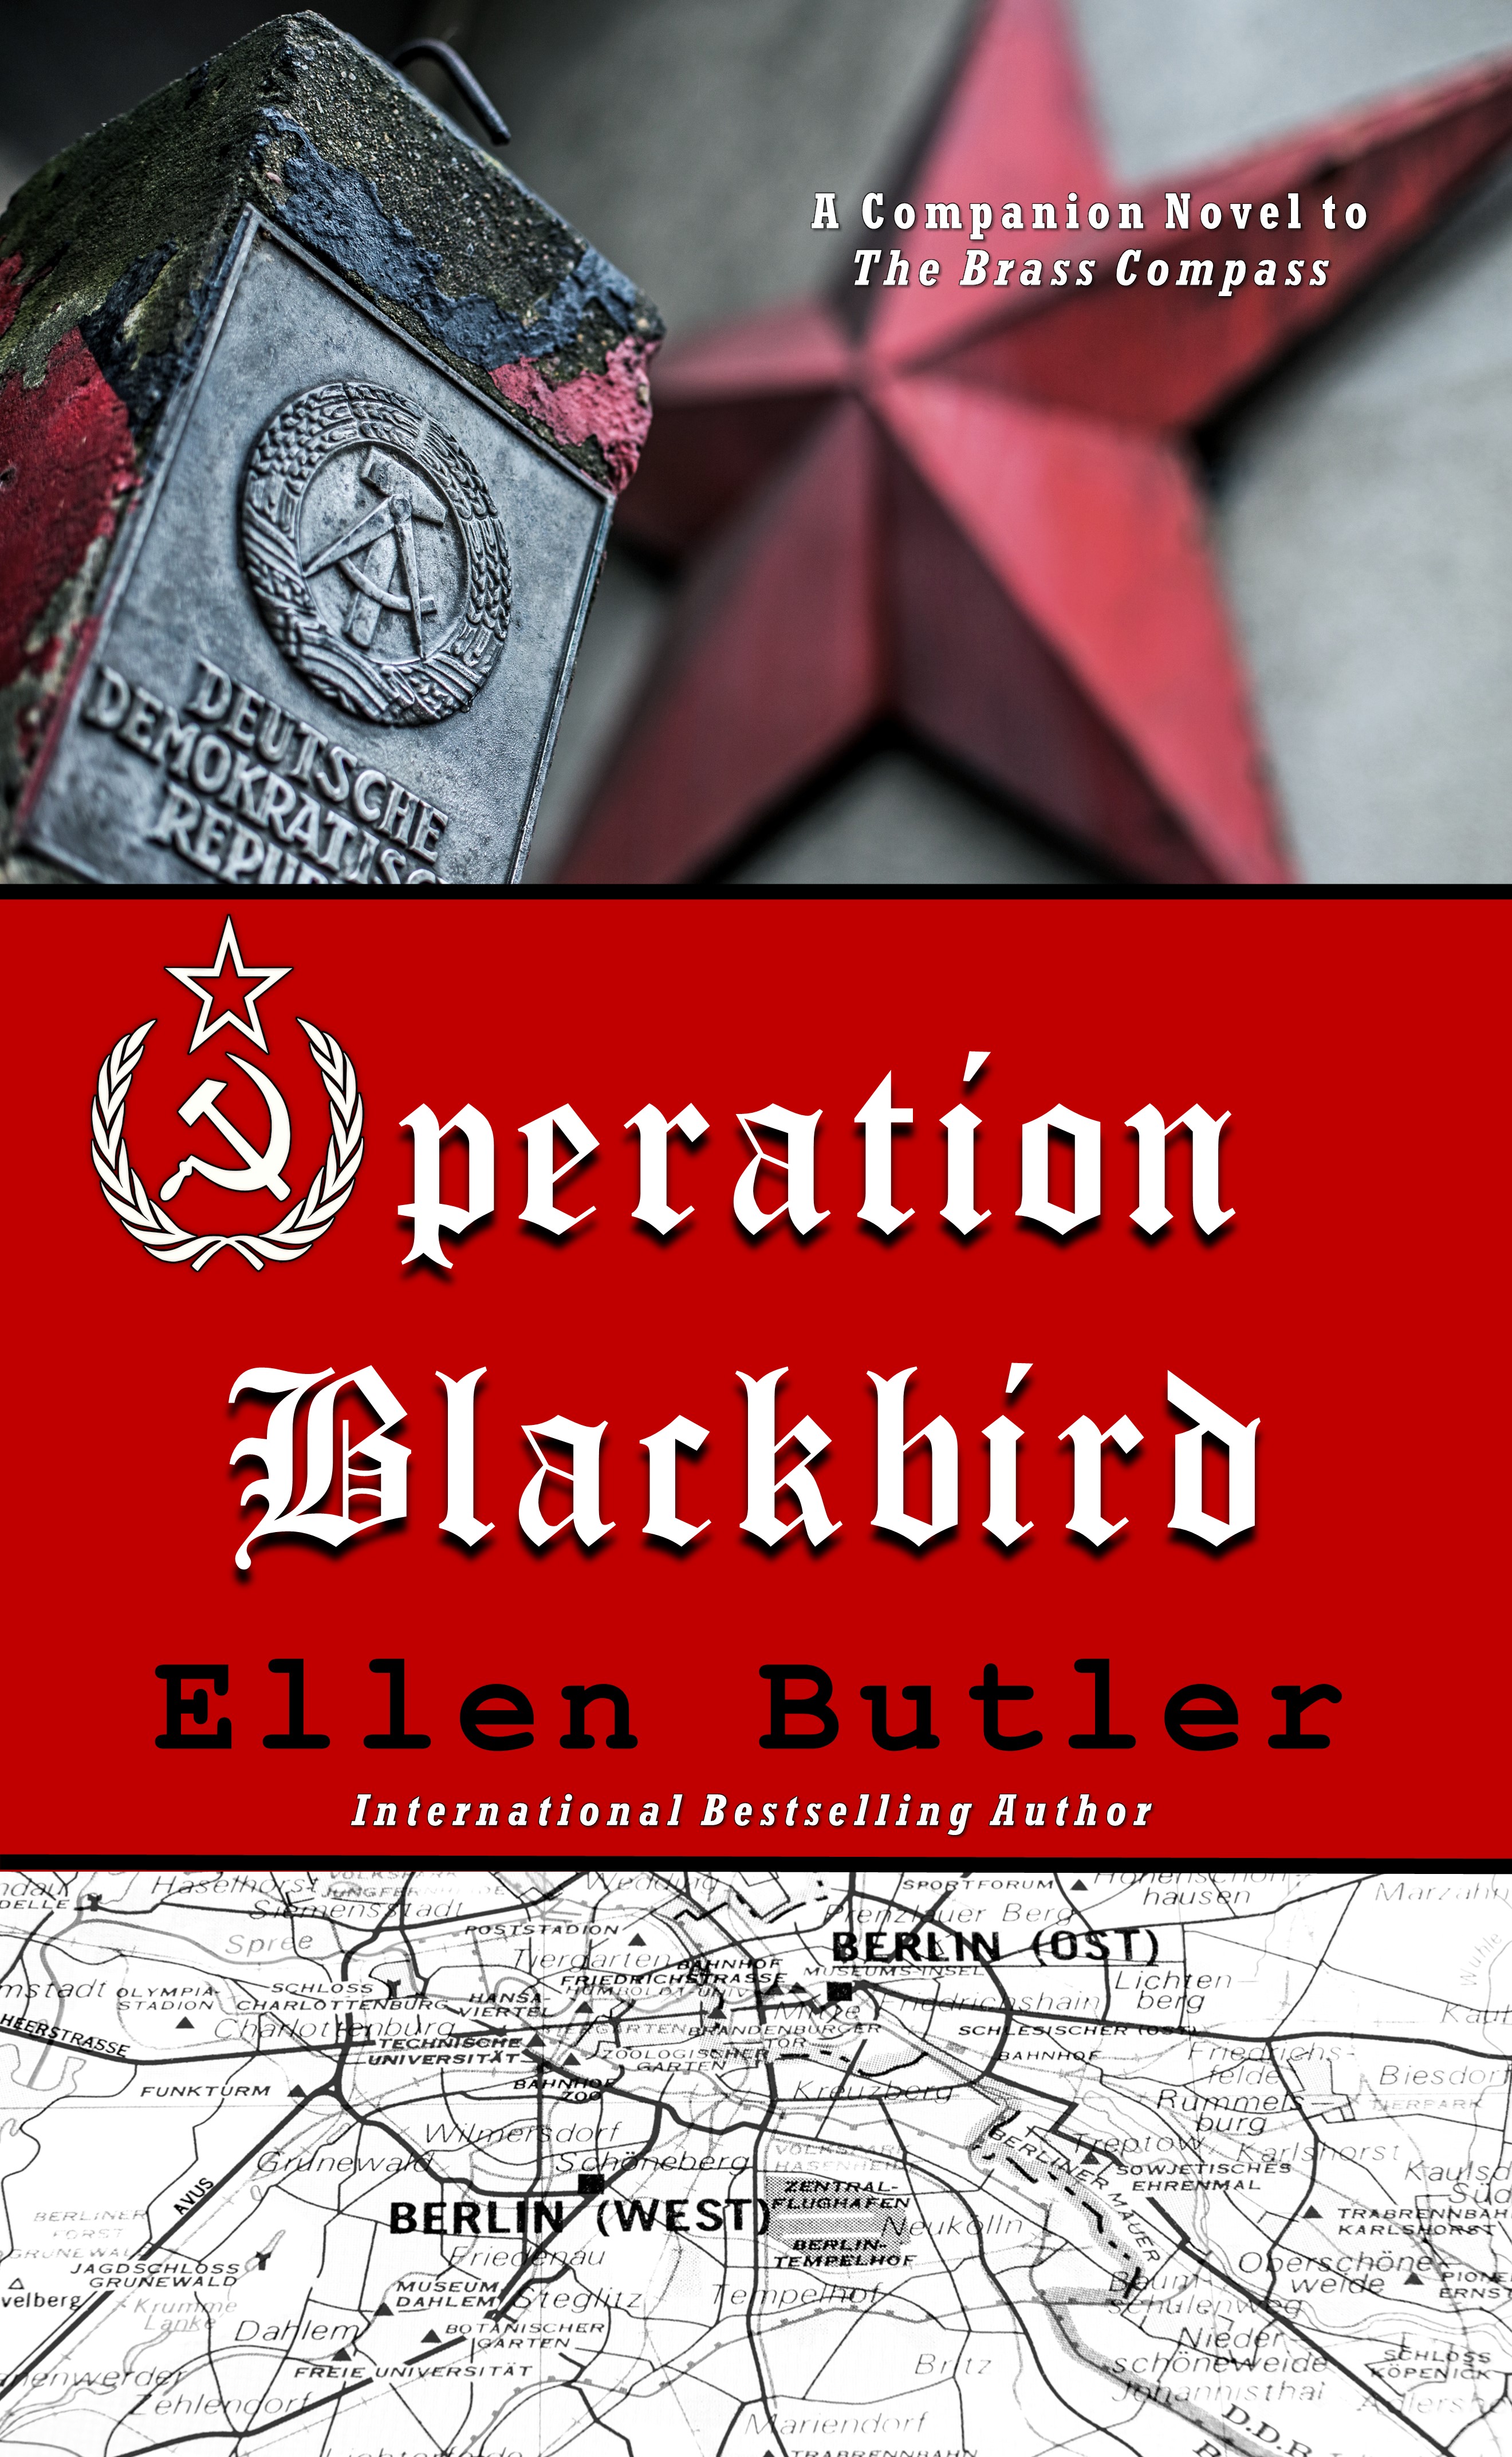 Operation Blackbird: Ellen Butler Unveils Suspenseful Cold War Spy Thriller